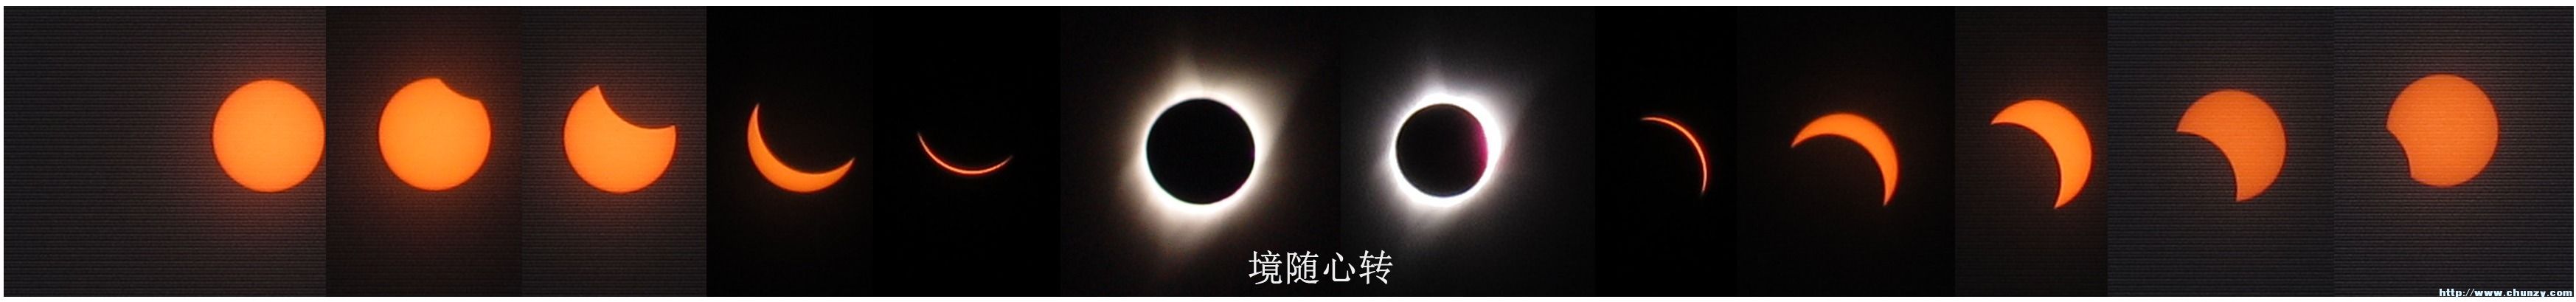 Total Eclipse—境随心转.jpg